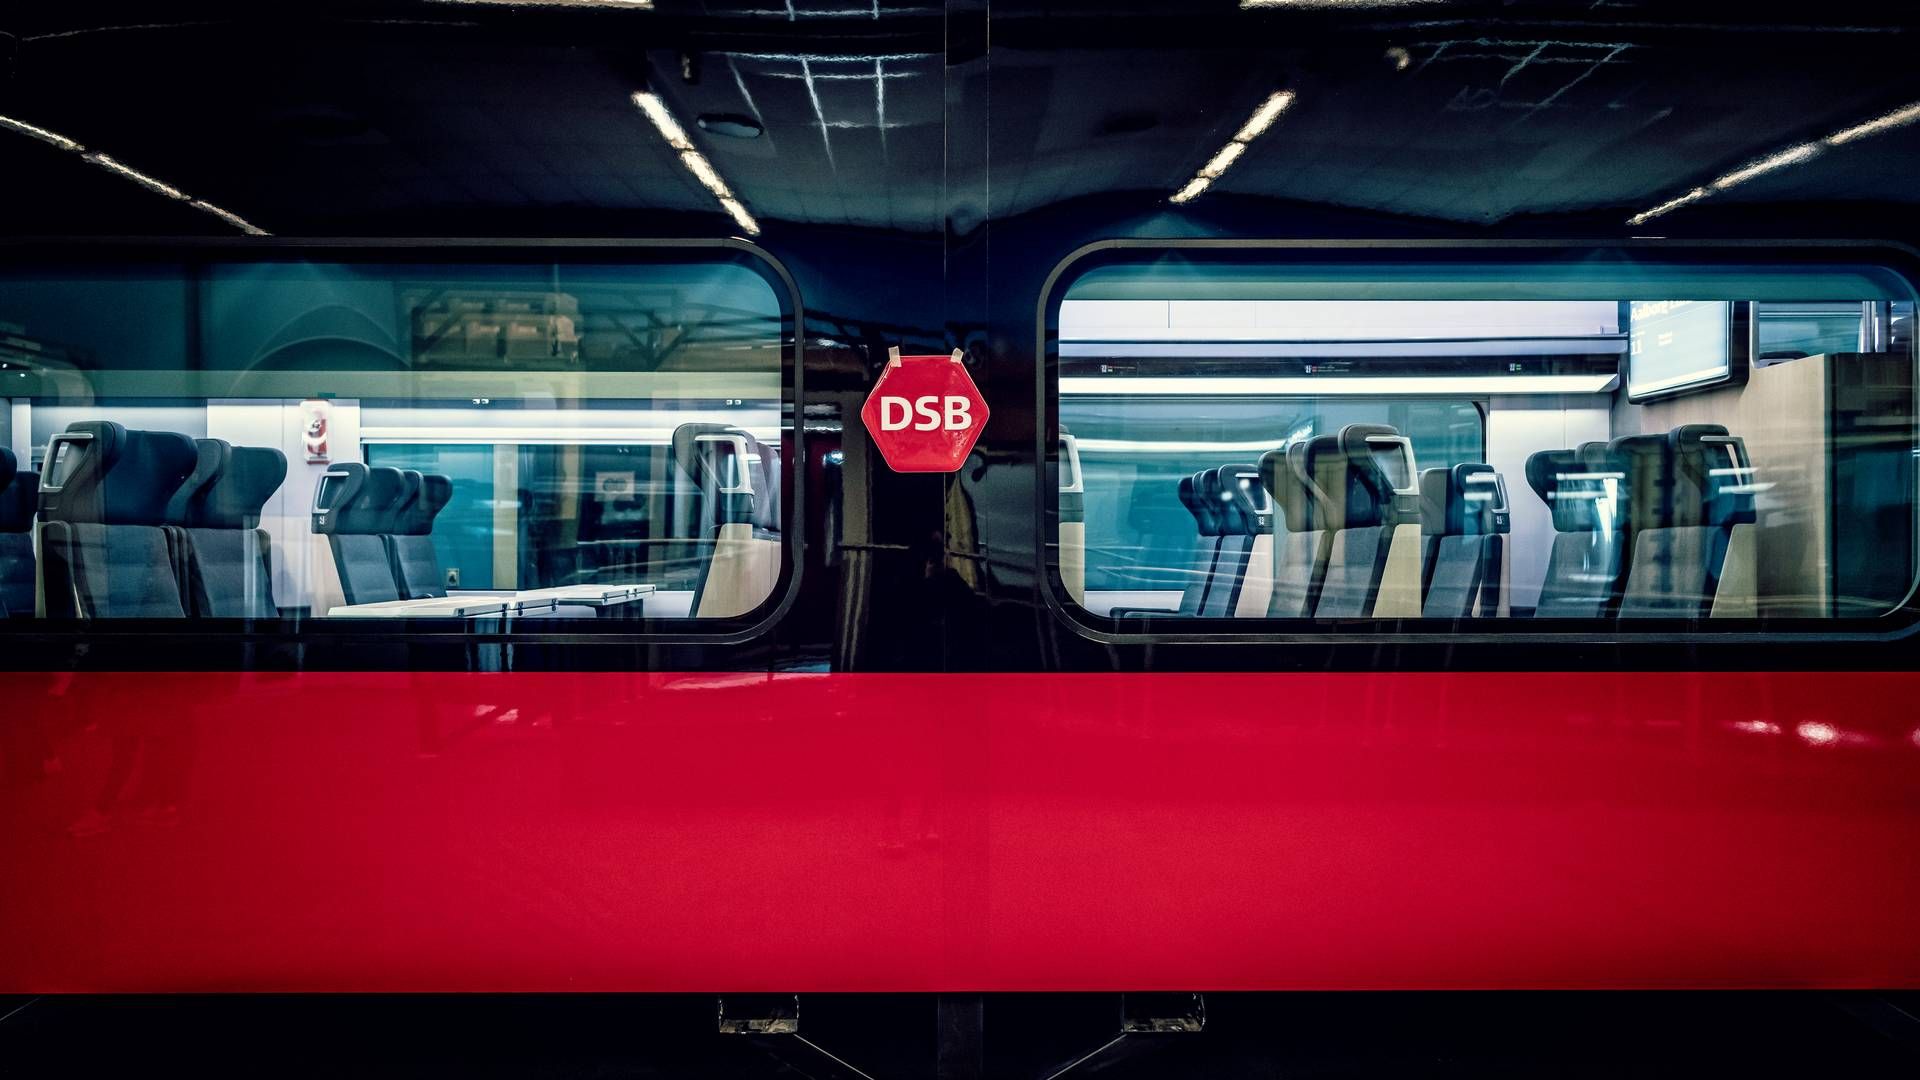 Passagere hos DSB vil i fremtiden blive talt og sporet via deres mobiltelefoner, så DSB kan se forskellige rejsemønstre. På billedet ses det nye IC5-tog. | Foto: Linda Johansen